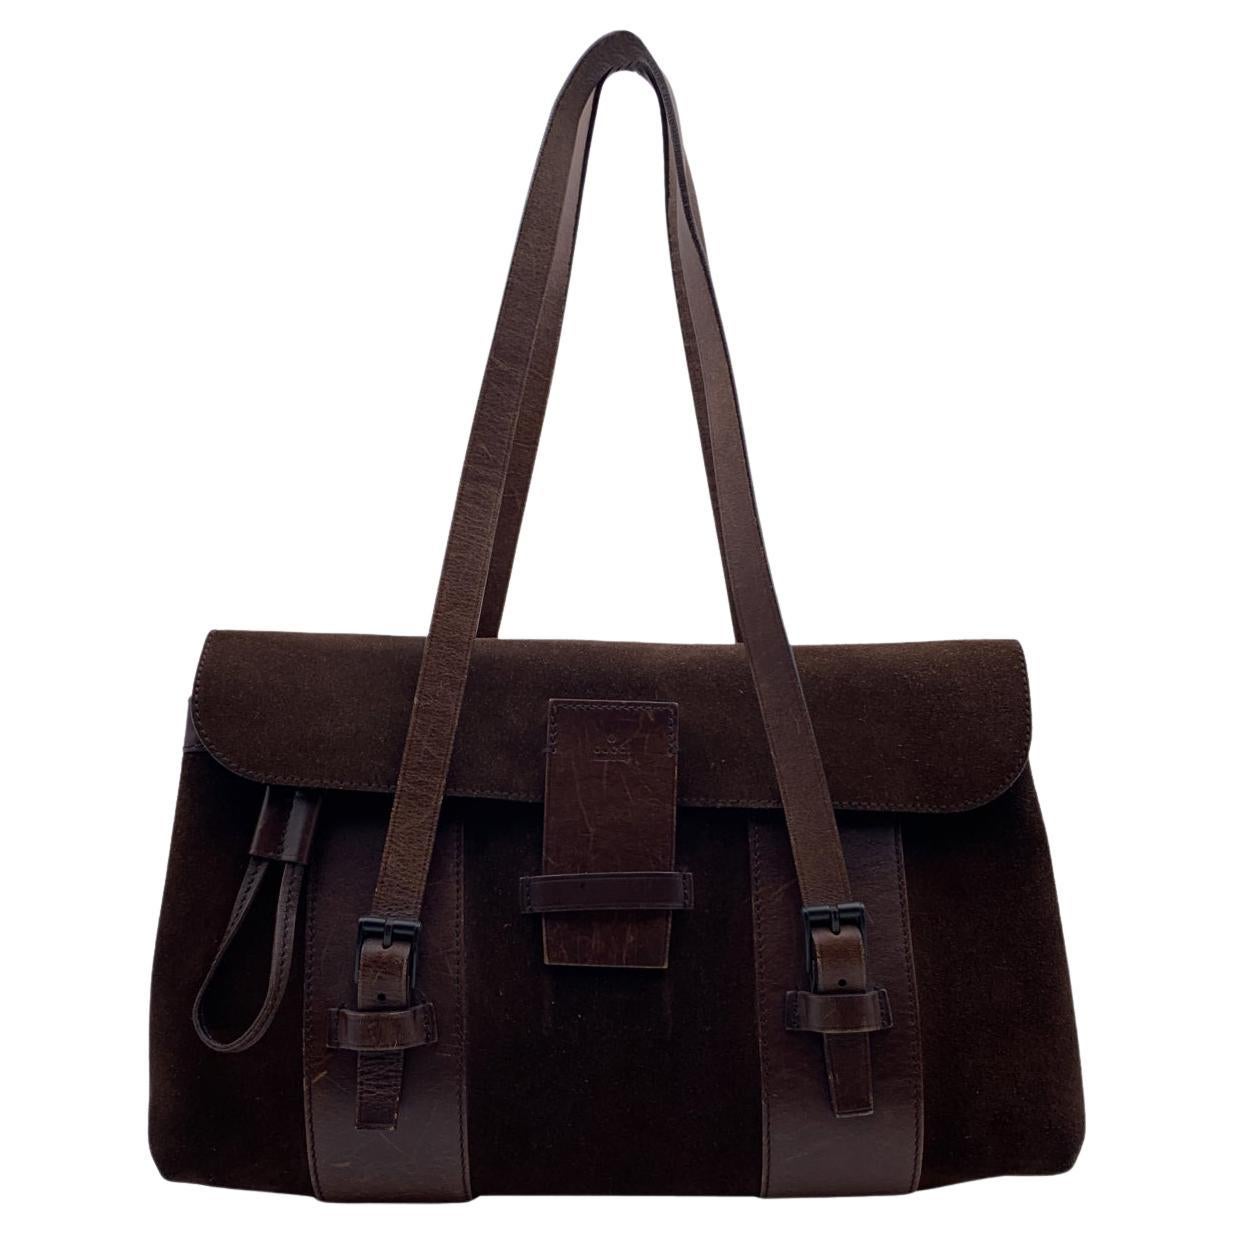 Gucci Brown Suede and Leather Shoulder Bag Handbag